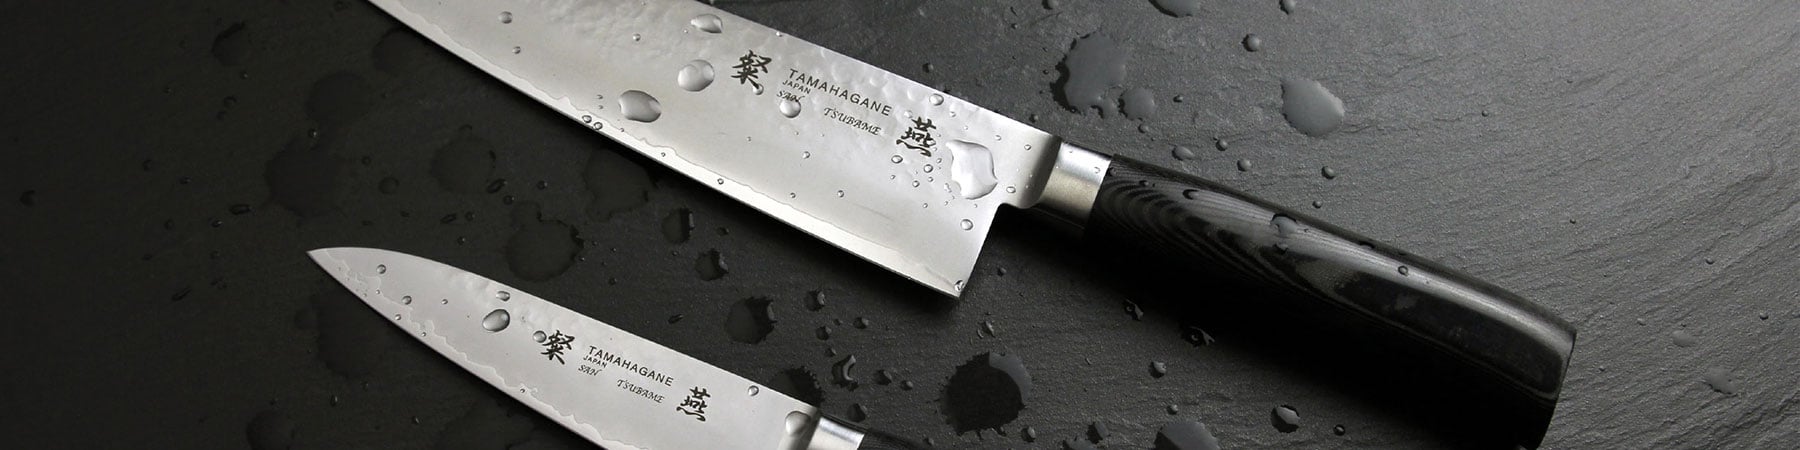 Tamahagane kniver